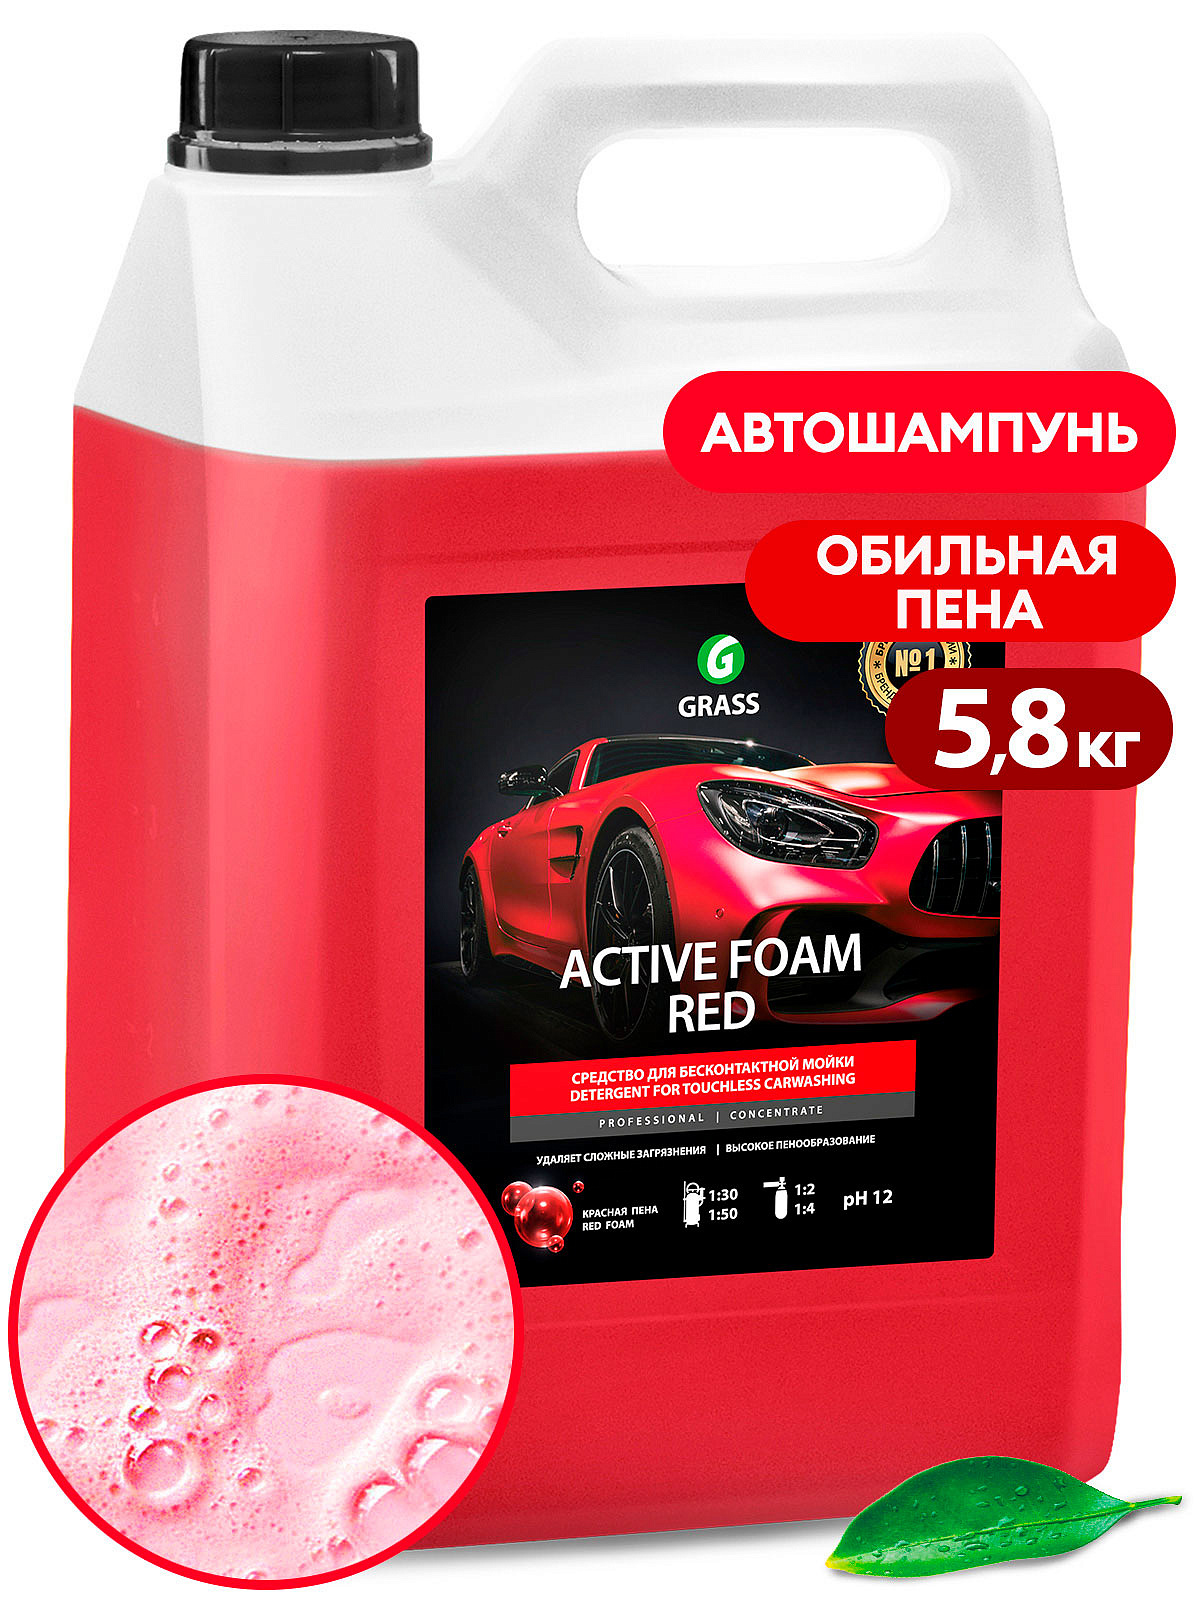 Химия для бесконтактной мойки. Пена активная "Active Foam Red" 5,8л. Active Foam Red 5.8кг. Автошампунь для бесконтактной мойки 5,8 кг "Active Foam Red". Автошампунь "Active Foam Red" производитель.